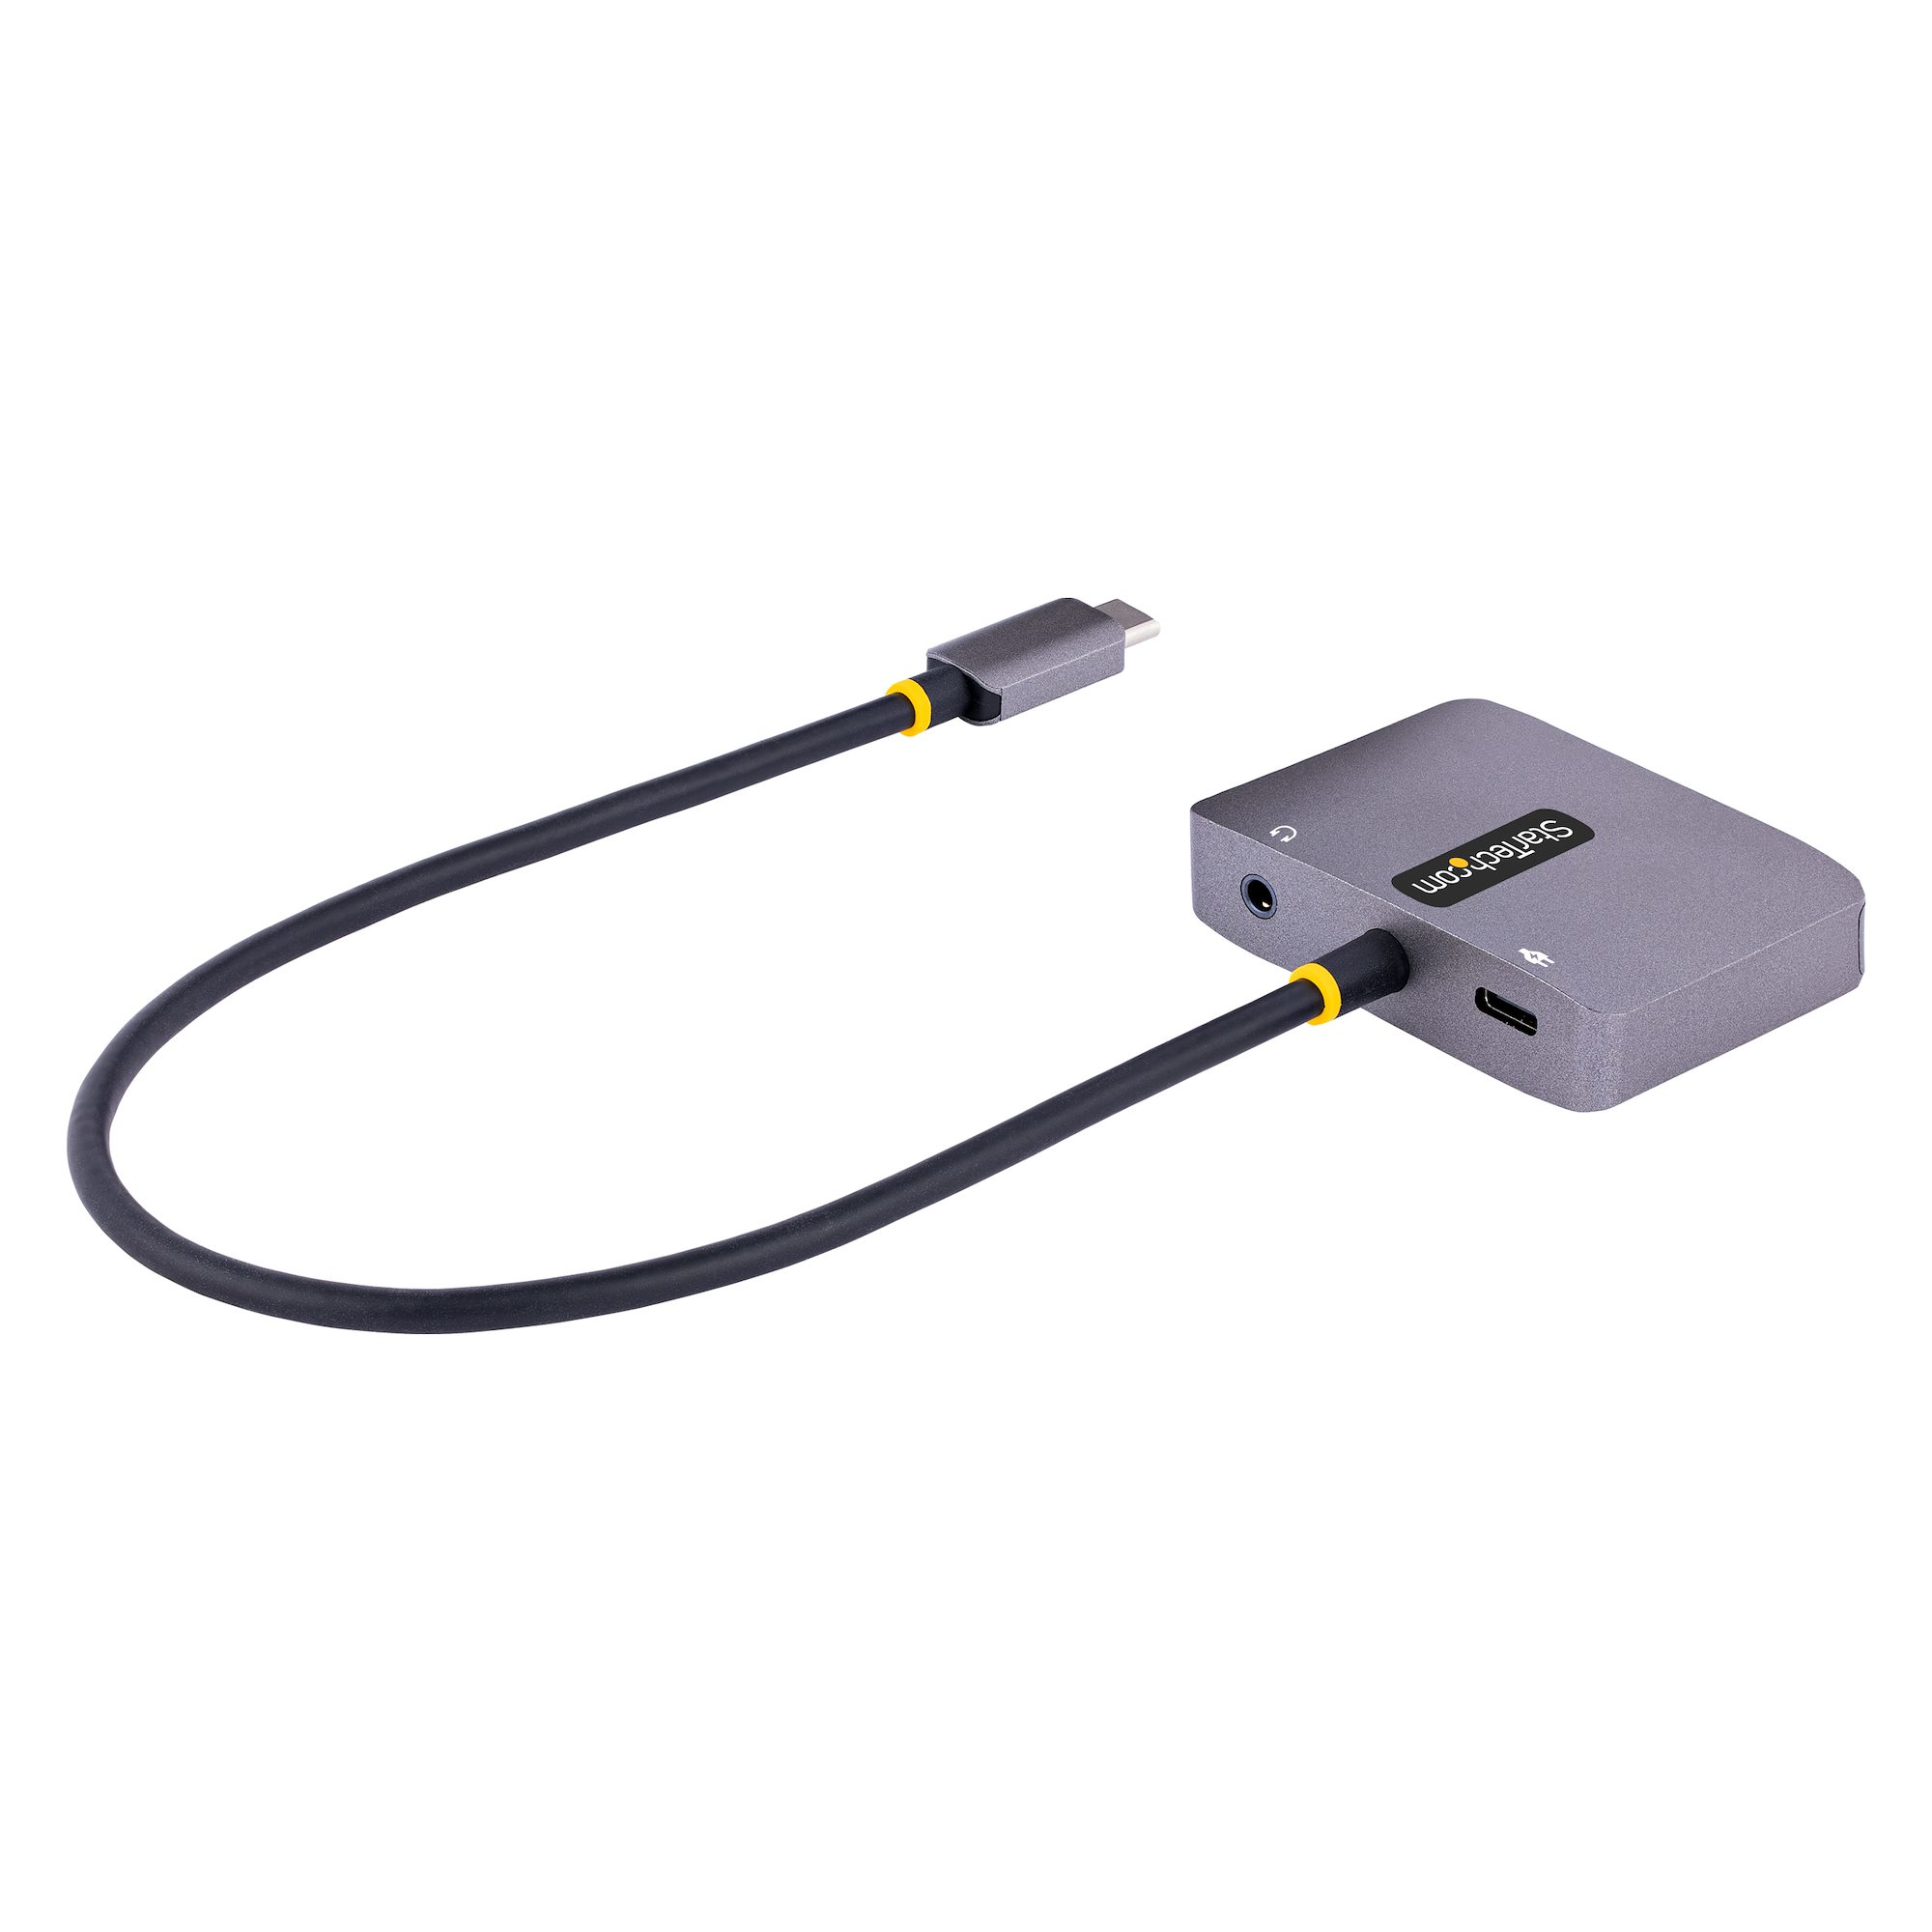 StarTech.com USB C-videoadapter, USB C till HDMI VGA-multiportadapter med 3,5 mm ljudutgång, 4K 60 Hz HDR, 100 W PD 3.0, kompatibel med Thunderbolt 3/4 - USB C-skärmreseadapter